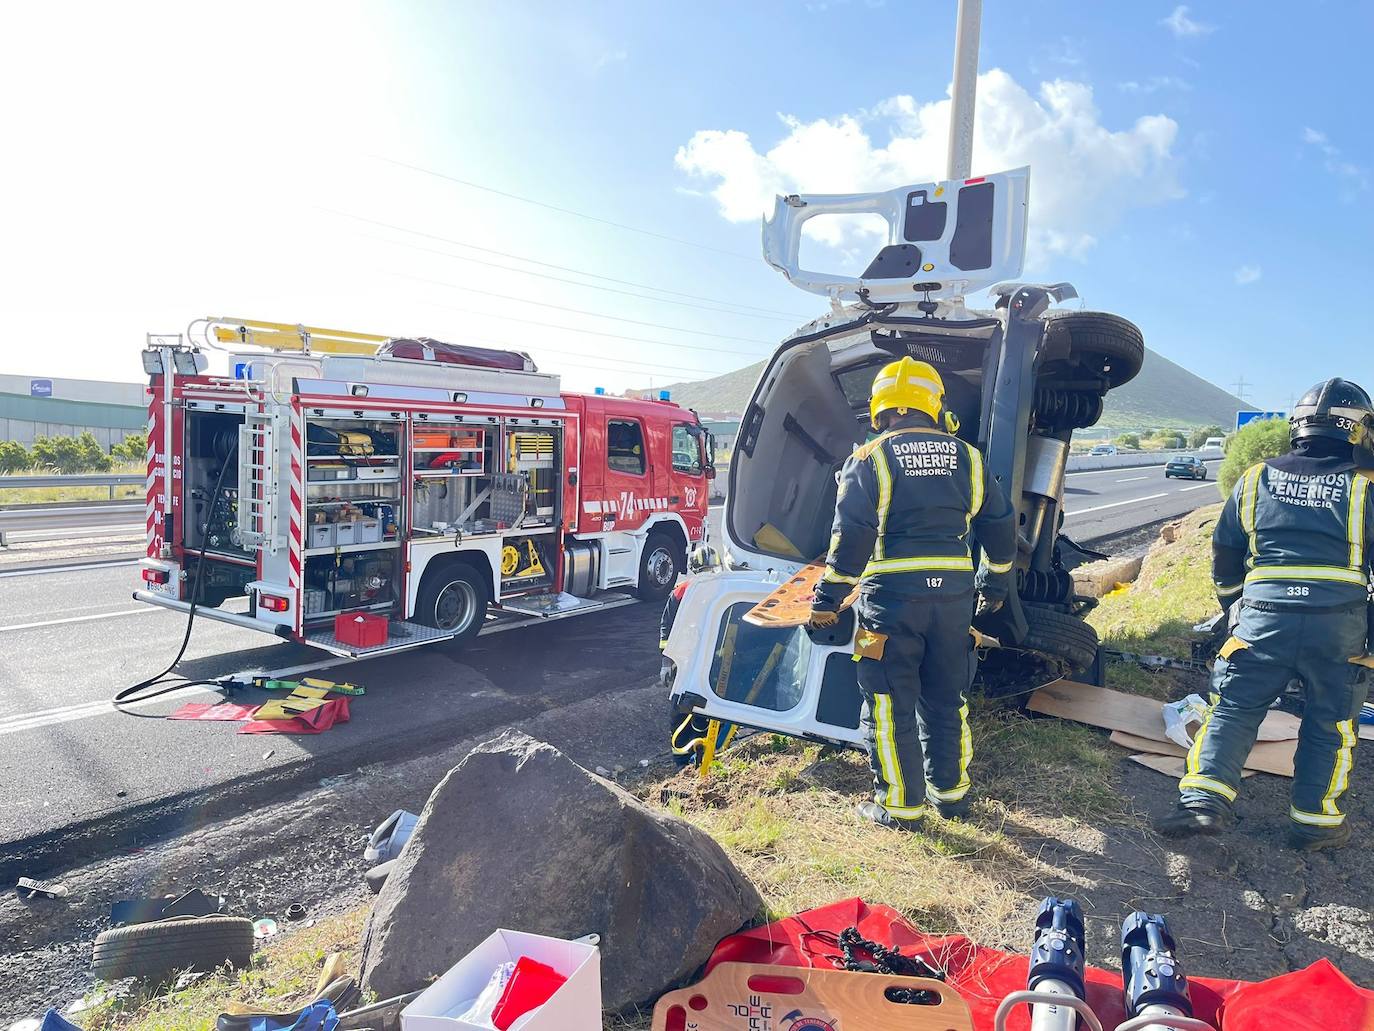 Liberan a una mujer herida tras volcar su vehículo en Tenerife